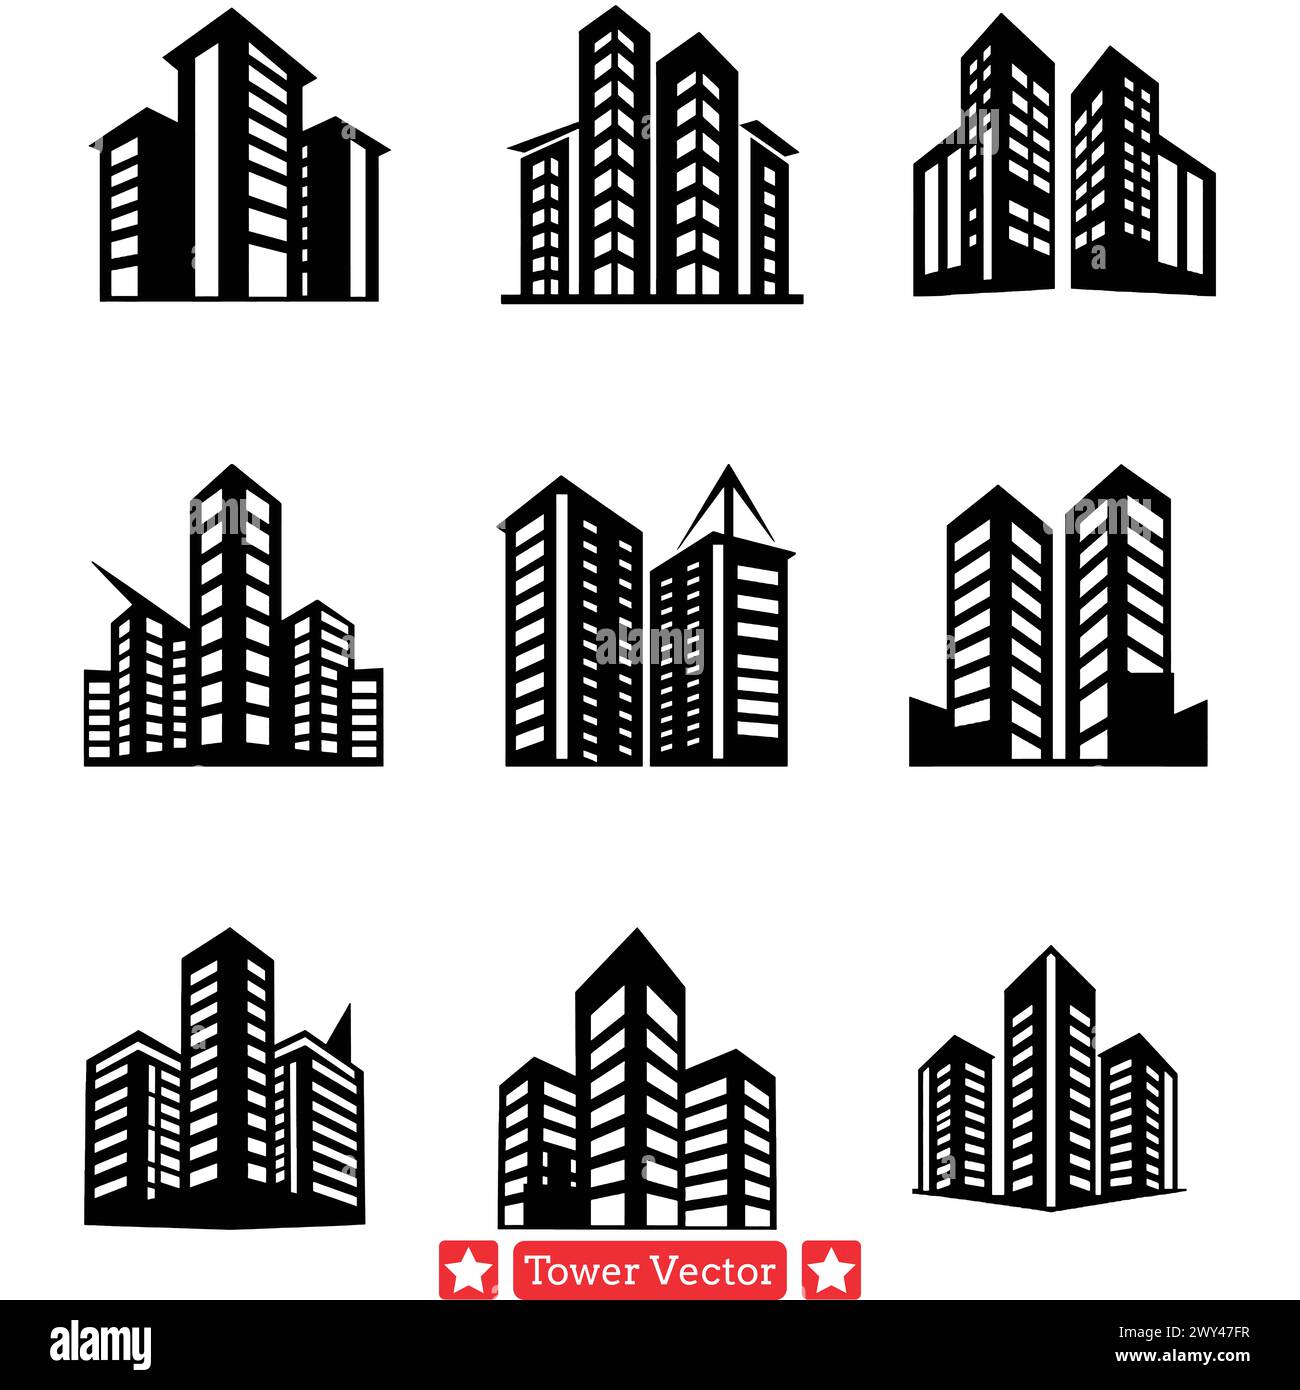 Punti di riferimento torreggianti Vector Set Skyline Icons per la pianificazione urbana e le illustrazioni di viaggio Illustrazione Vettoriale